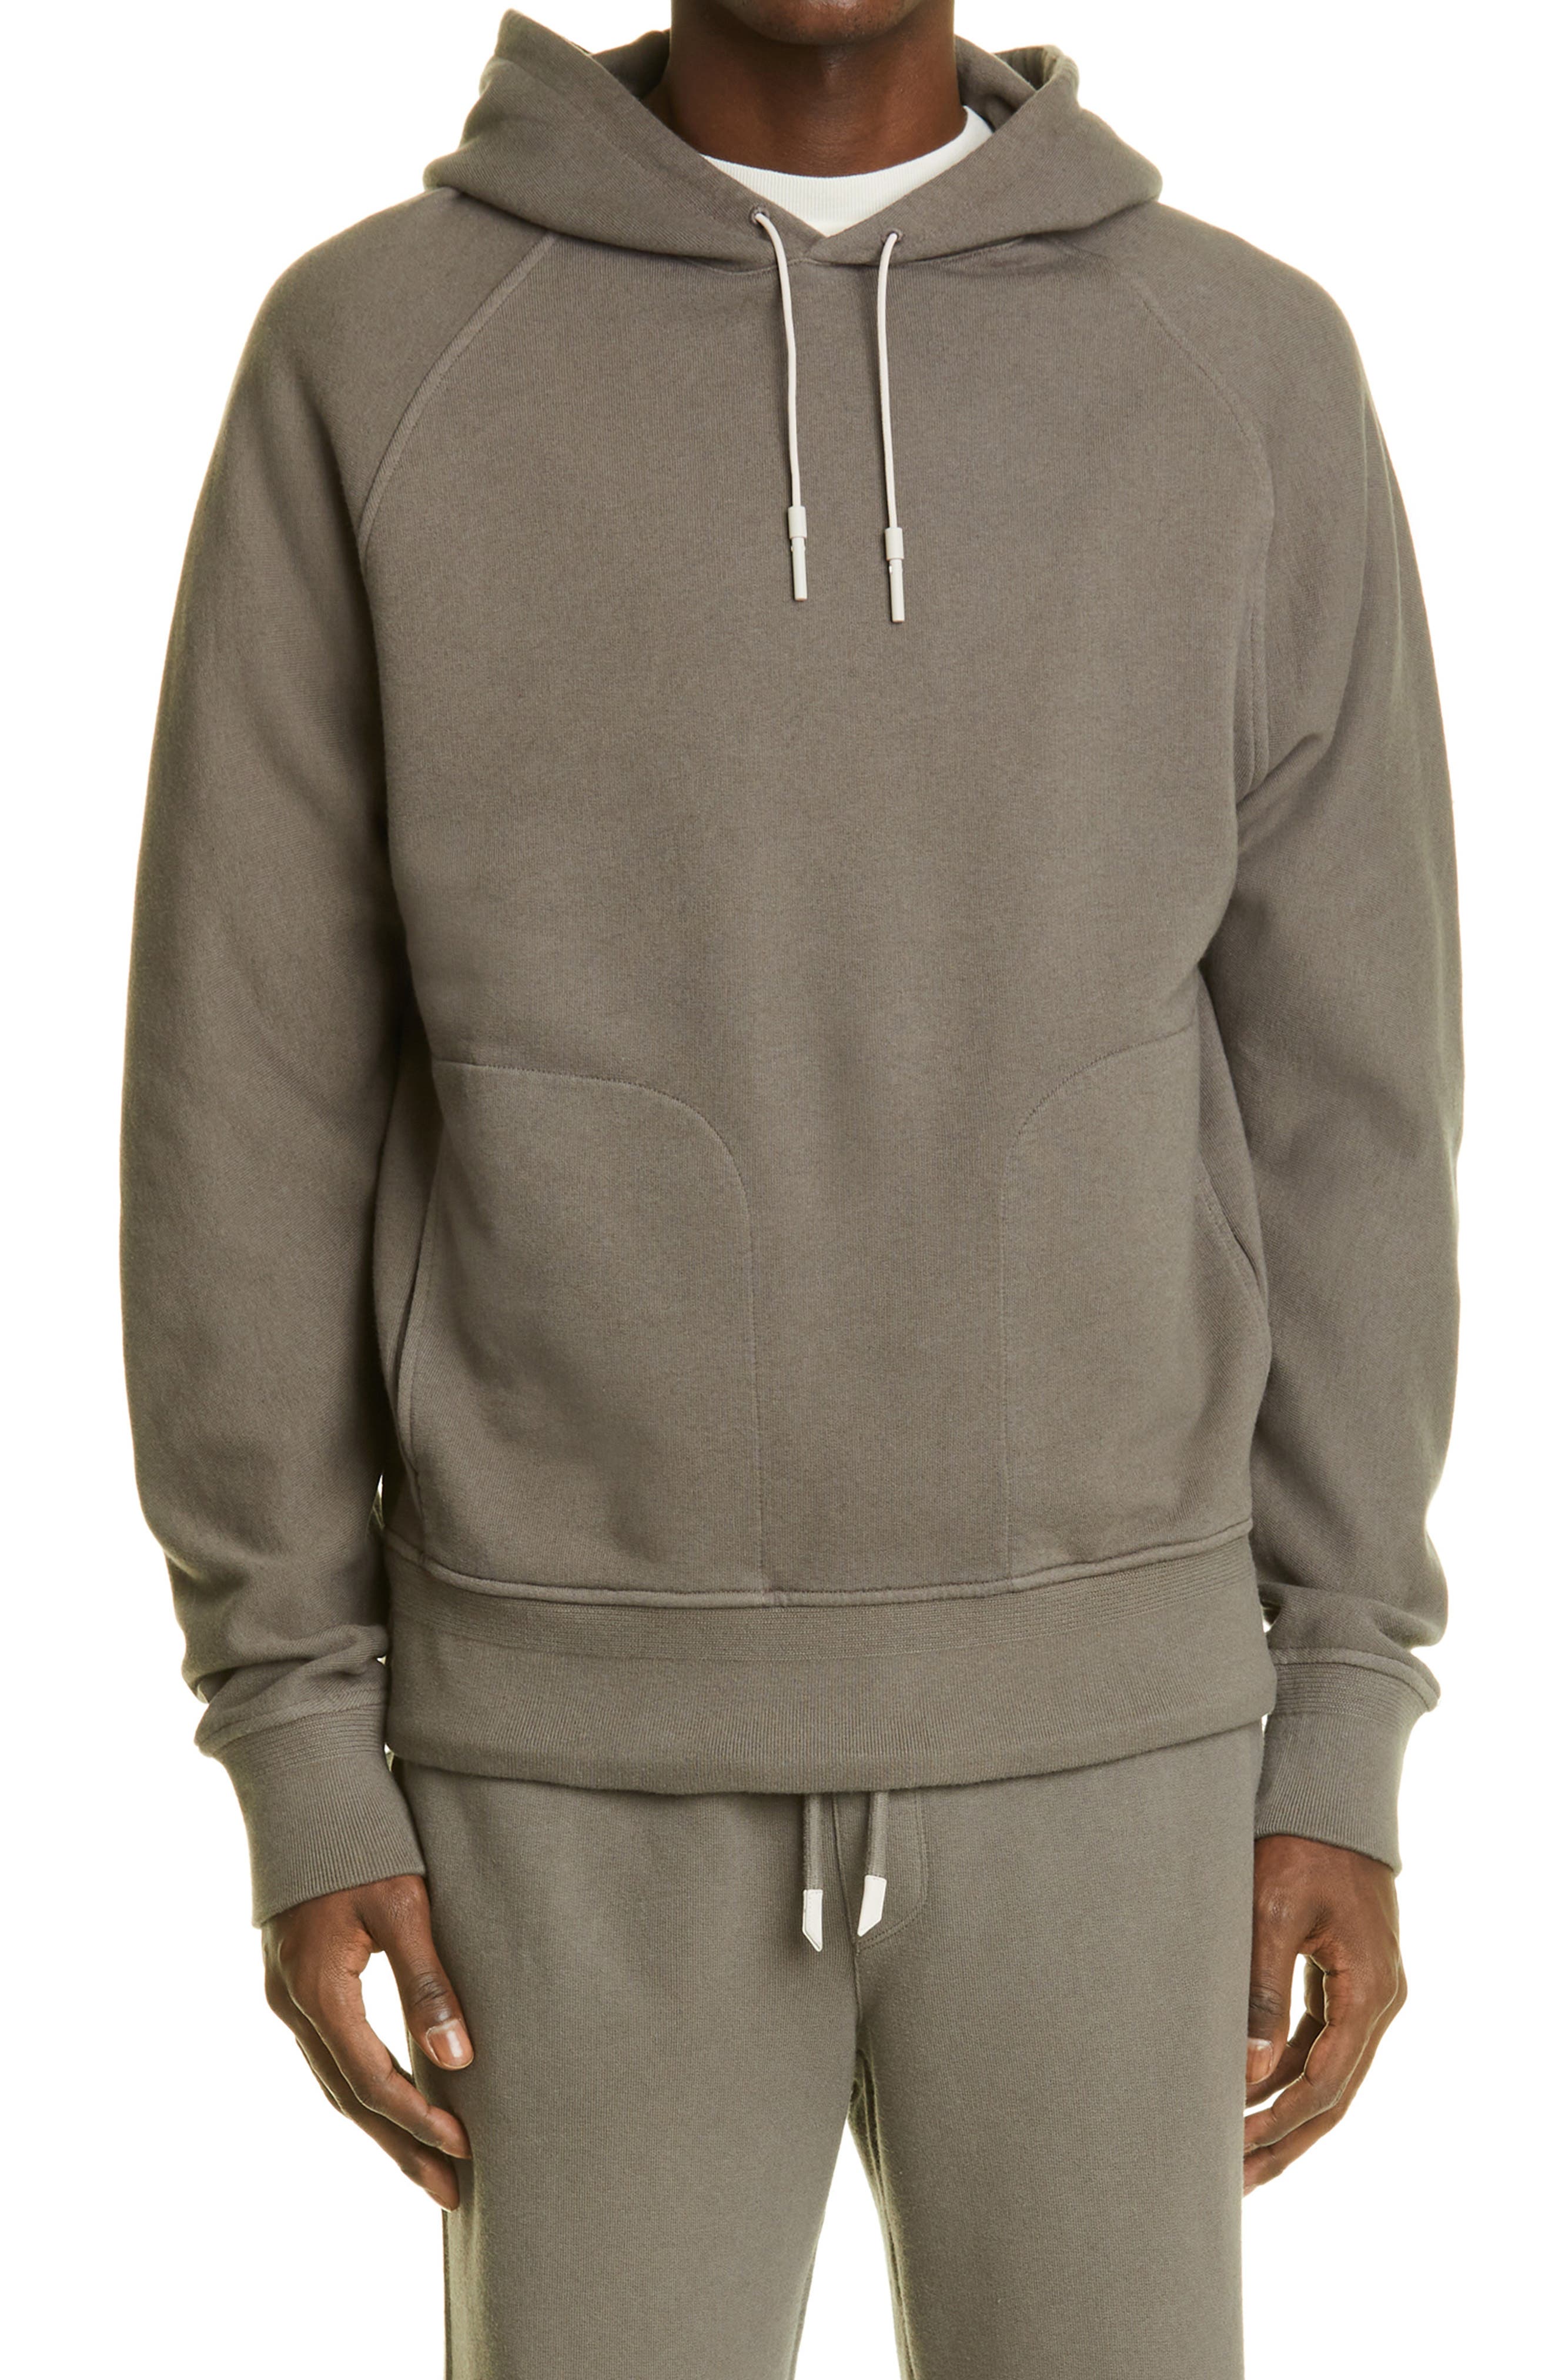 Men's Fleece tops sweatshirt hoodies top zip pockets plain black grey no logo